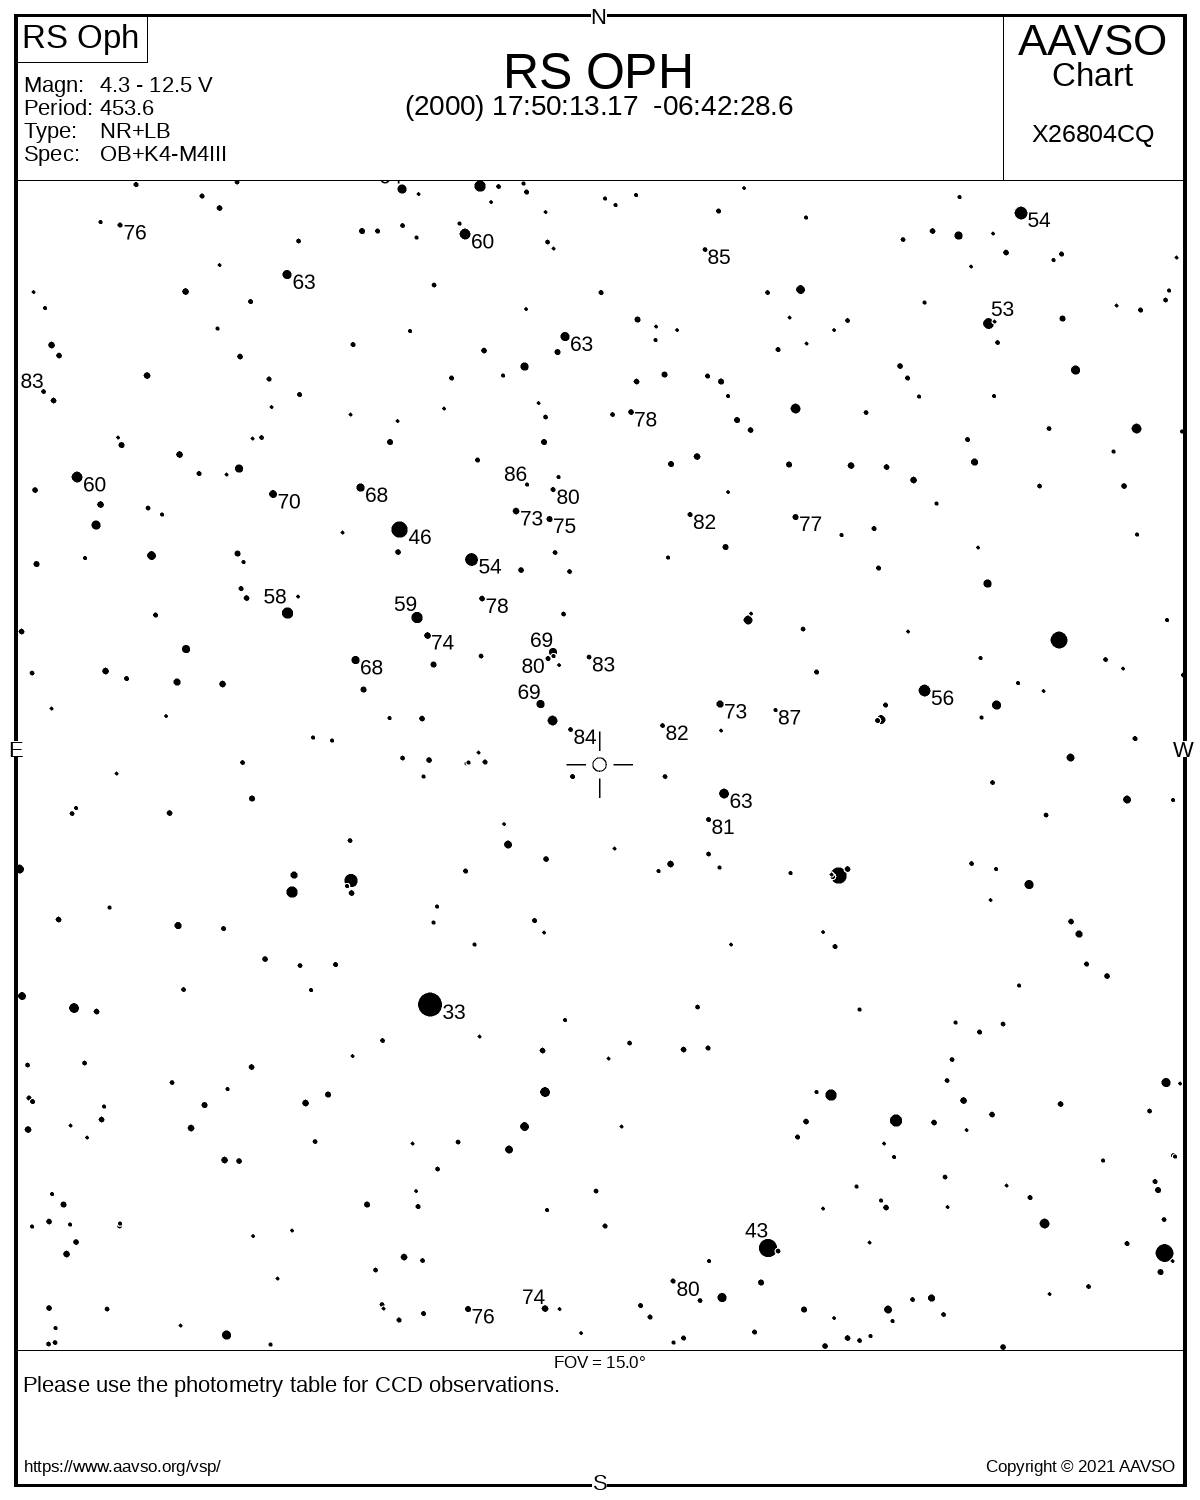 Mapka AAVSO okolicy nowej powrotnej RS Oph o polu widzenia 15°. Gwiazda zmienna jest oznaczona otwartym kółkiem w centrum rysunku. Liczby oznaczają wizualną jasność gwiazdy, do której można porównać jasność RS Oph, np. 54 oznacza gwiazdę porównania o jasności 5.4 mag (taka jasność RS Oph była na koniec nocy obserwacyjnej 10/11 sierpnia 2021 r.). Oszacowane jasności wizualne RS Oph można raportować do AAVSO, by śledzić te zmiany tak, jak pokazano na tytułowej ilustracji. Źródło: AAVSO